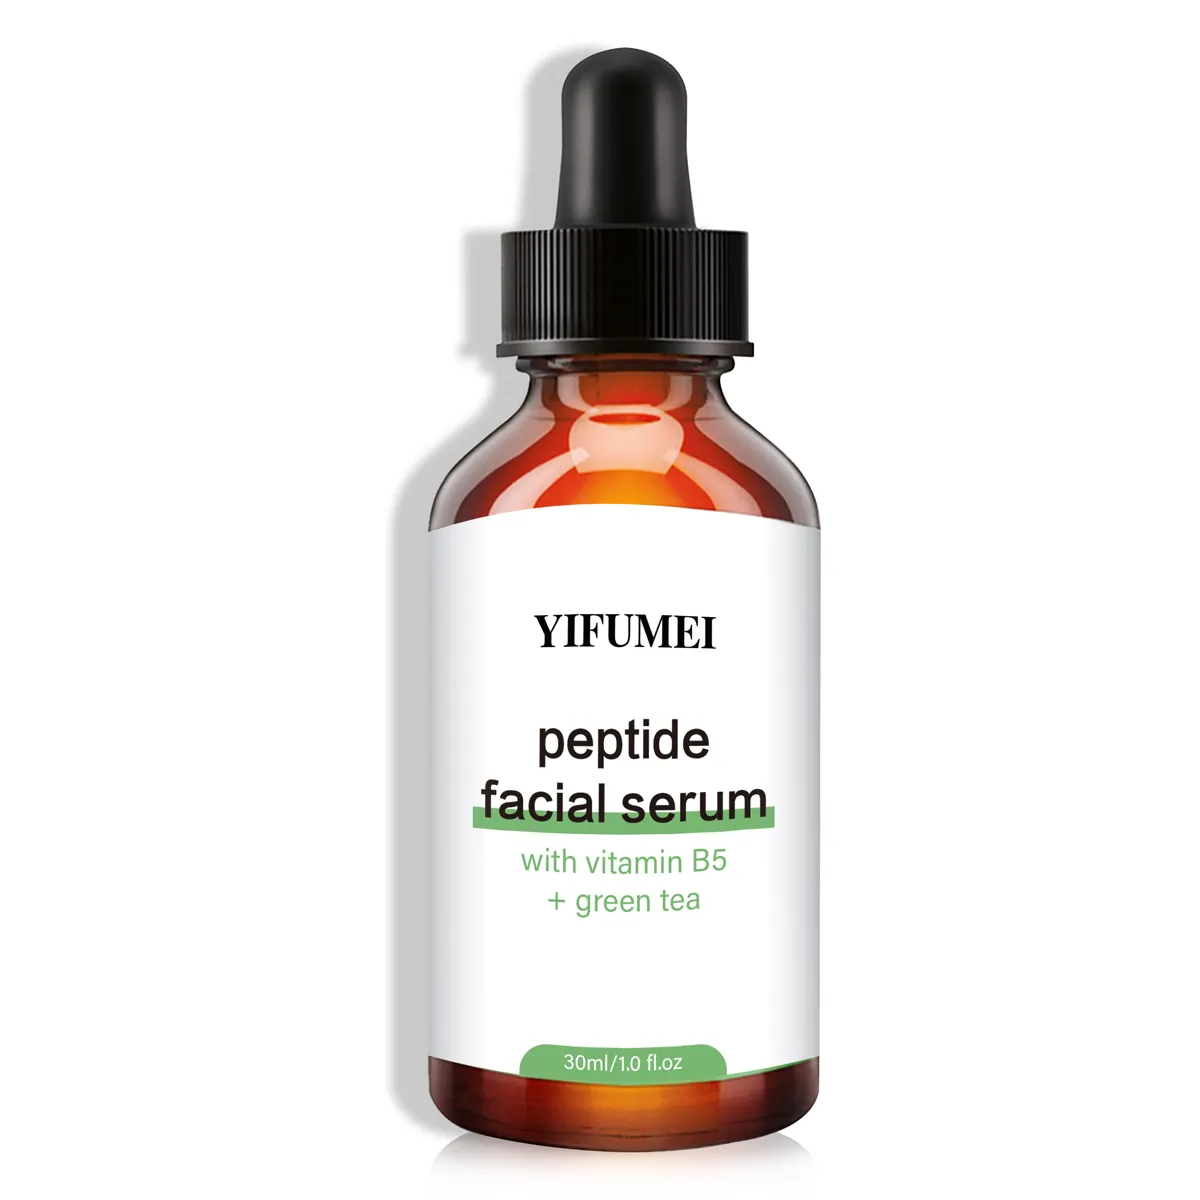 Private Label Repair Damage Facial Skin Anti Aging Green Tea Peptides Vitamin B5 Serum For Face